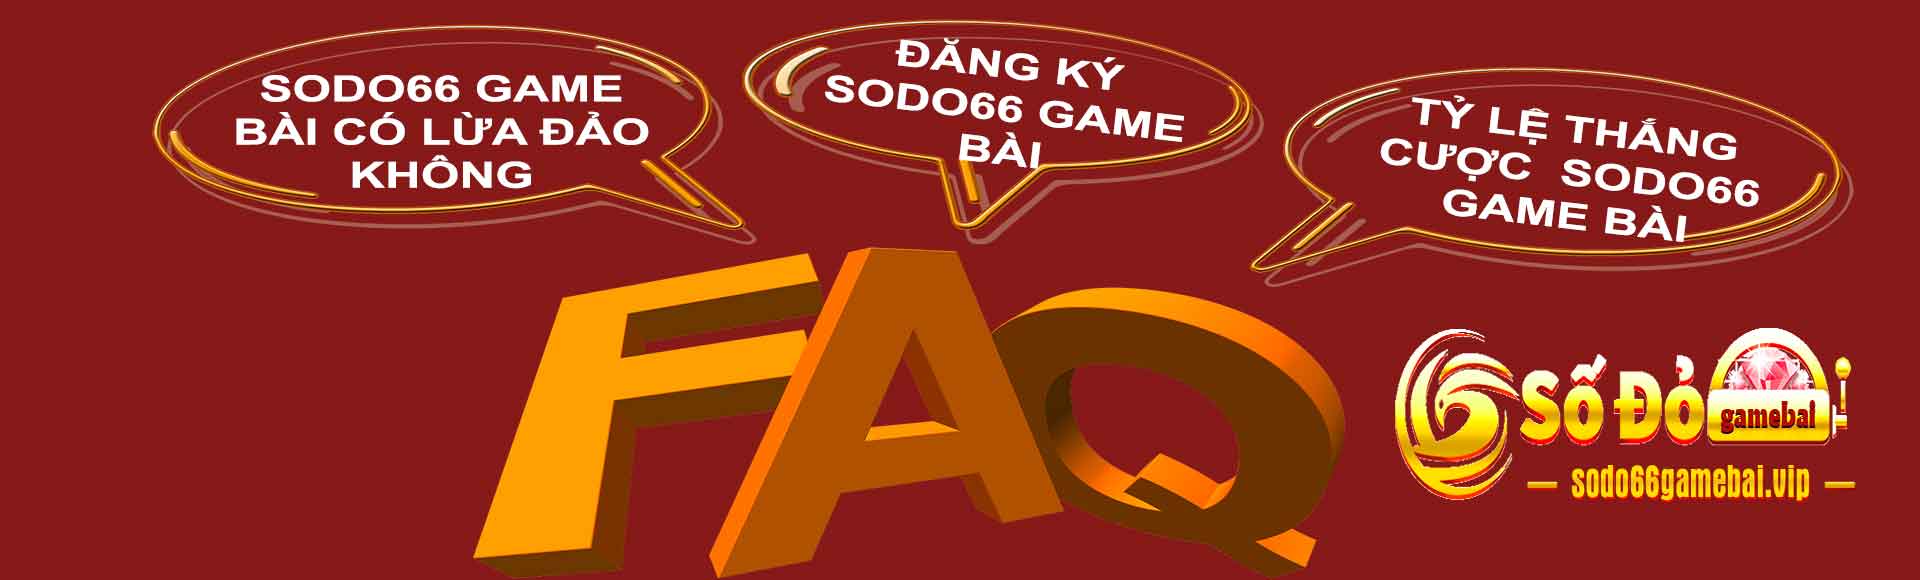 Các câu hỏi liên quan đến sodo66 game bài nổi bật nhất